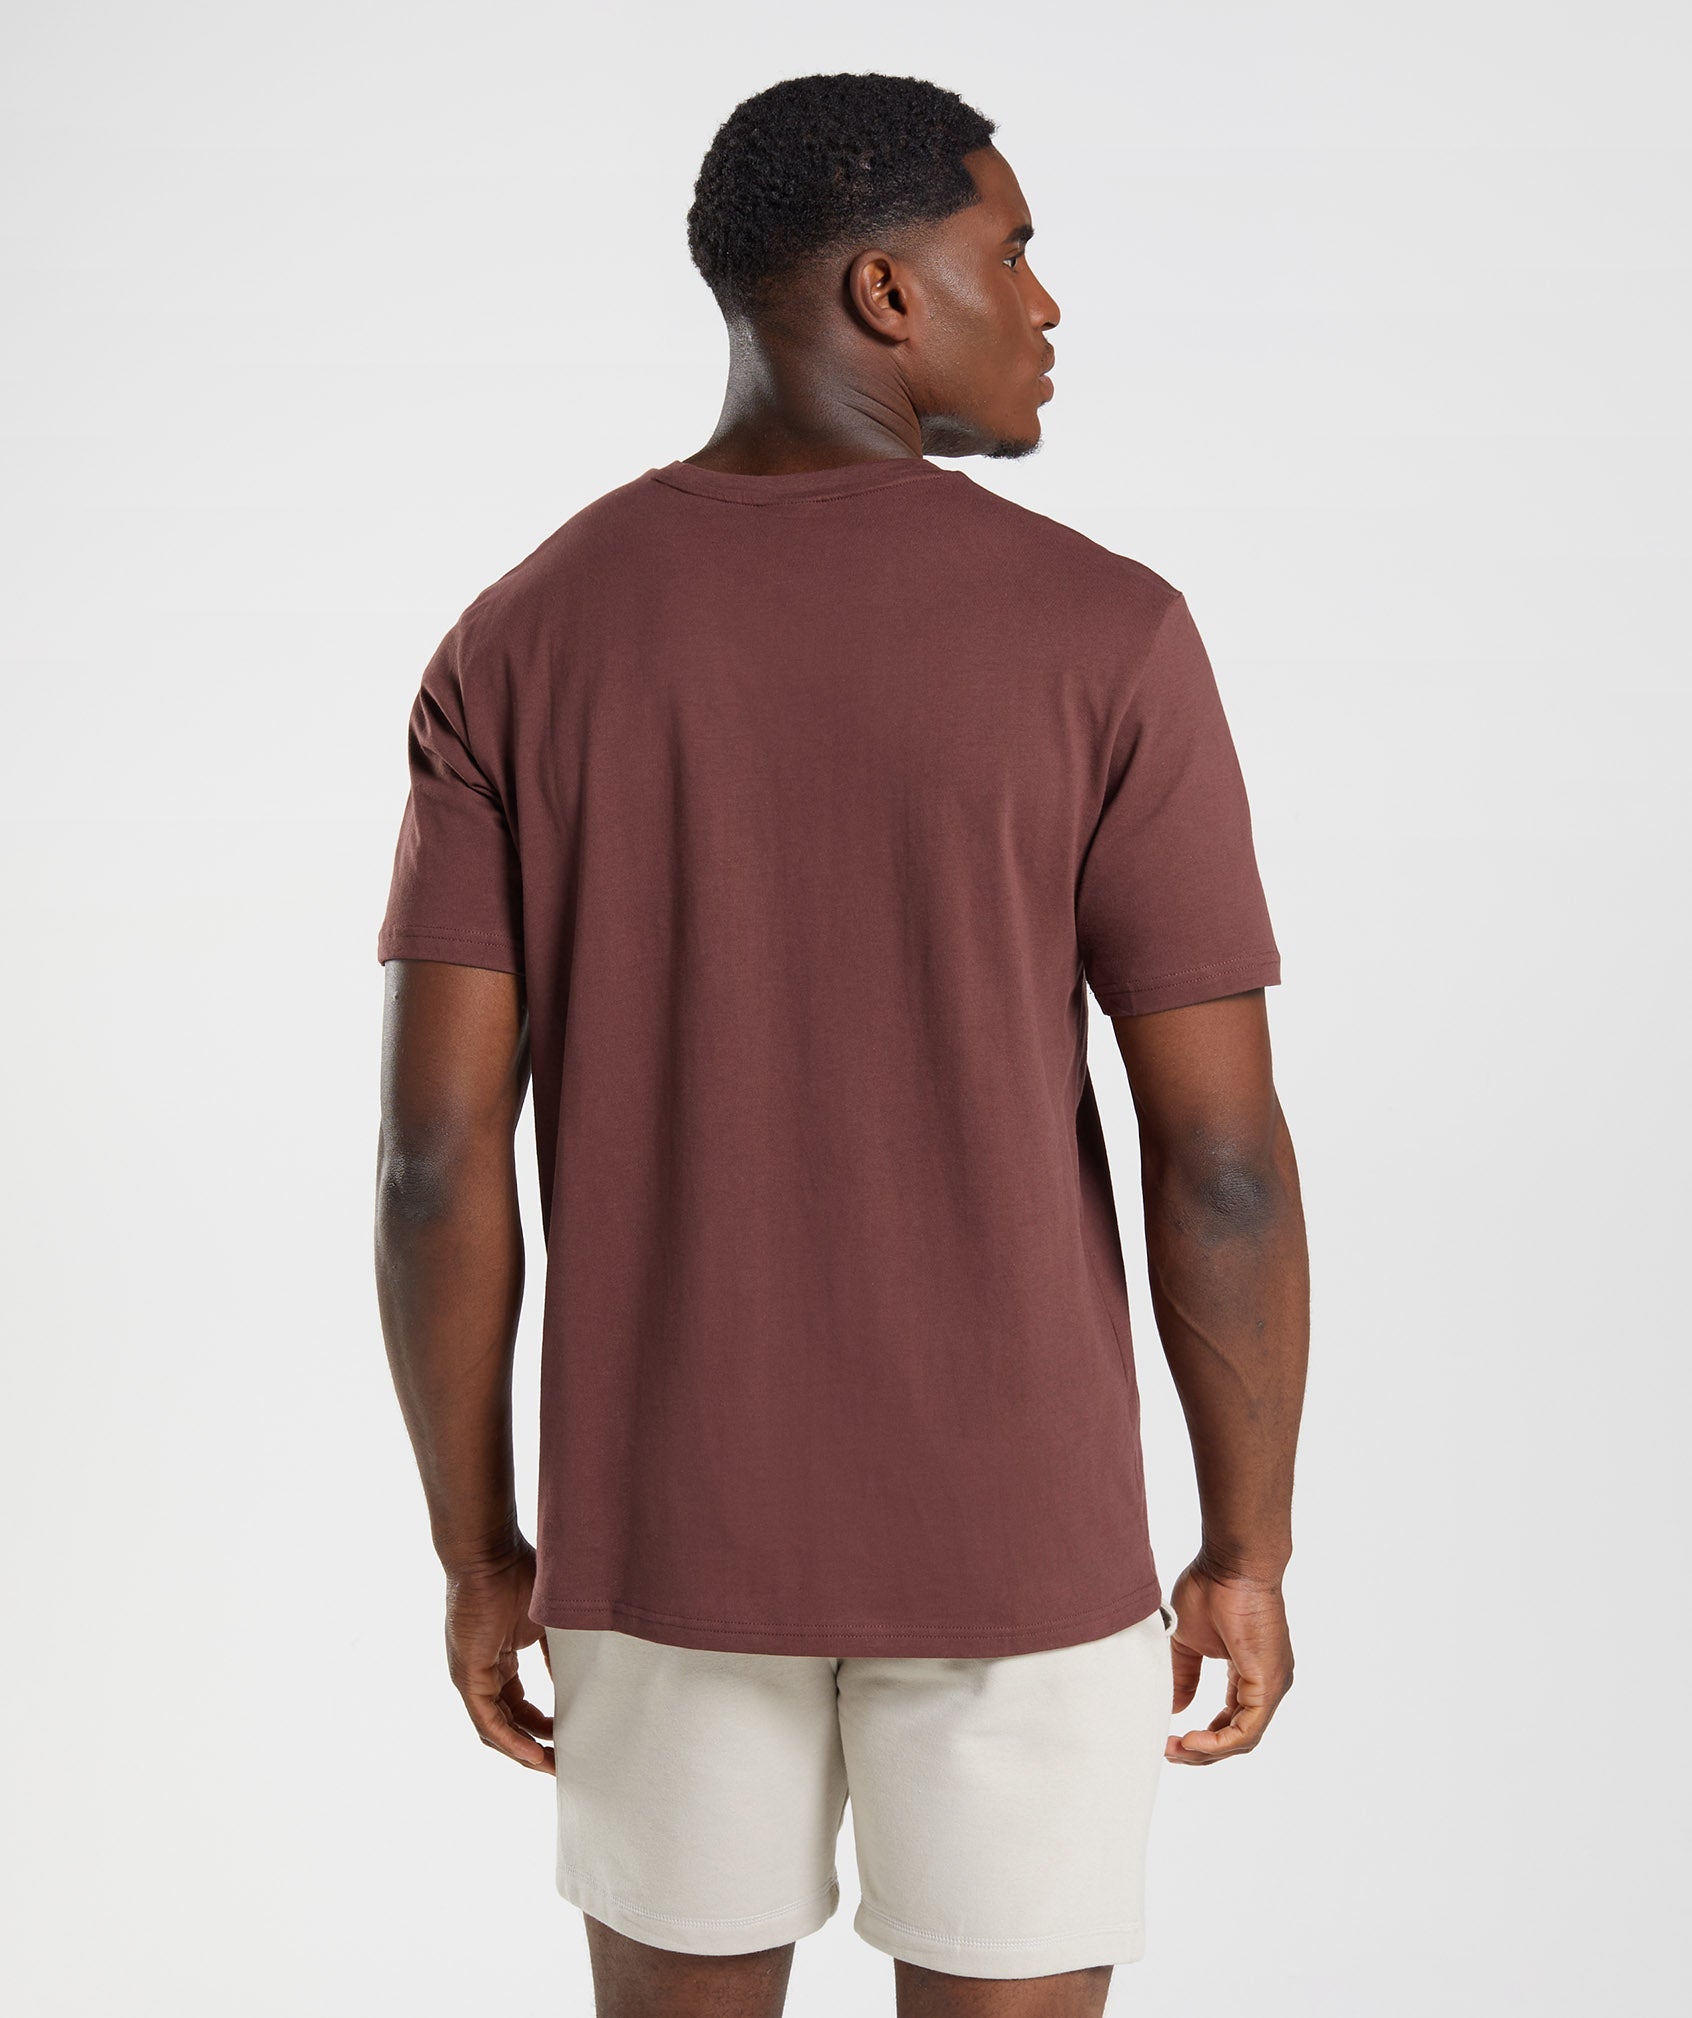 Crest T-Shirt in Cherry Brown